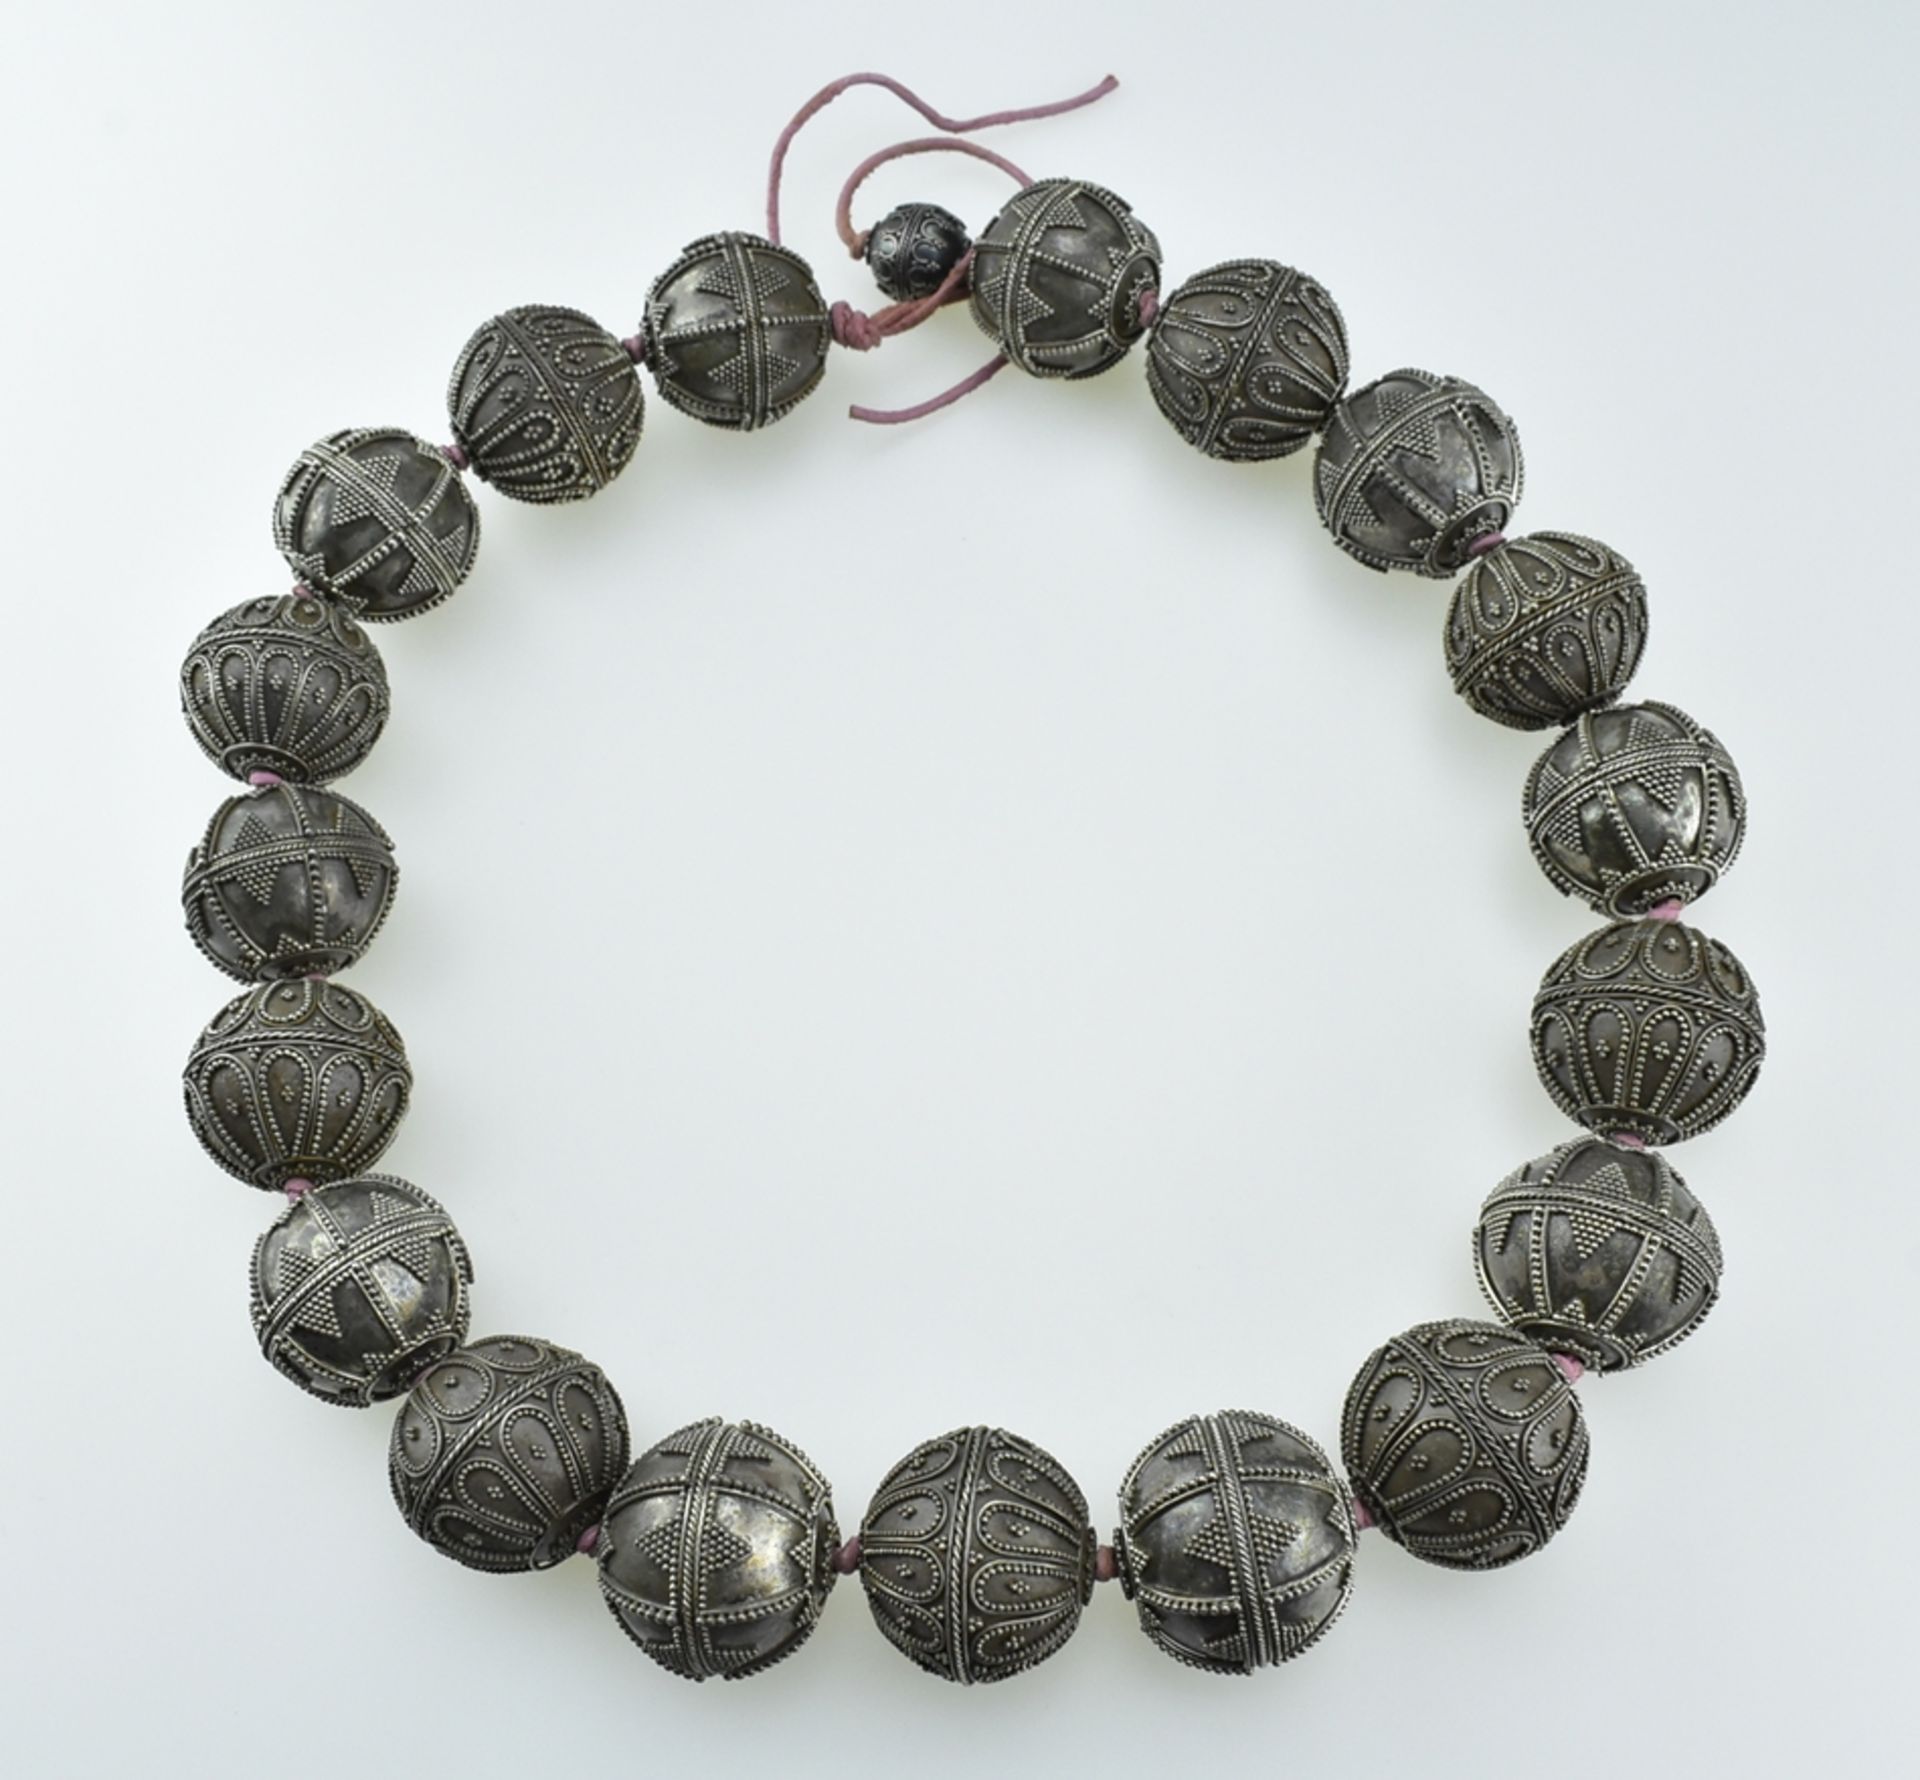 Collier aus handgefertigten Silberkugeln mit Zierbelötung. Ø 2 cm